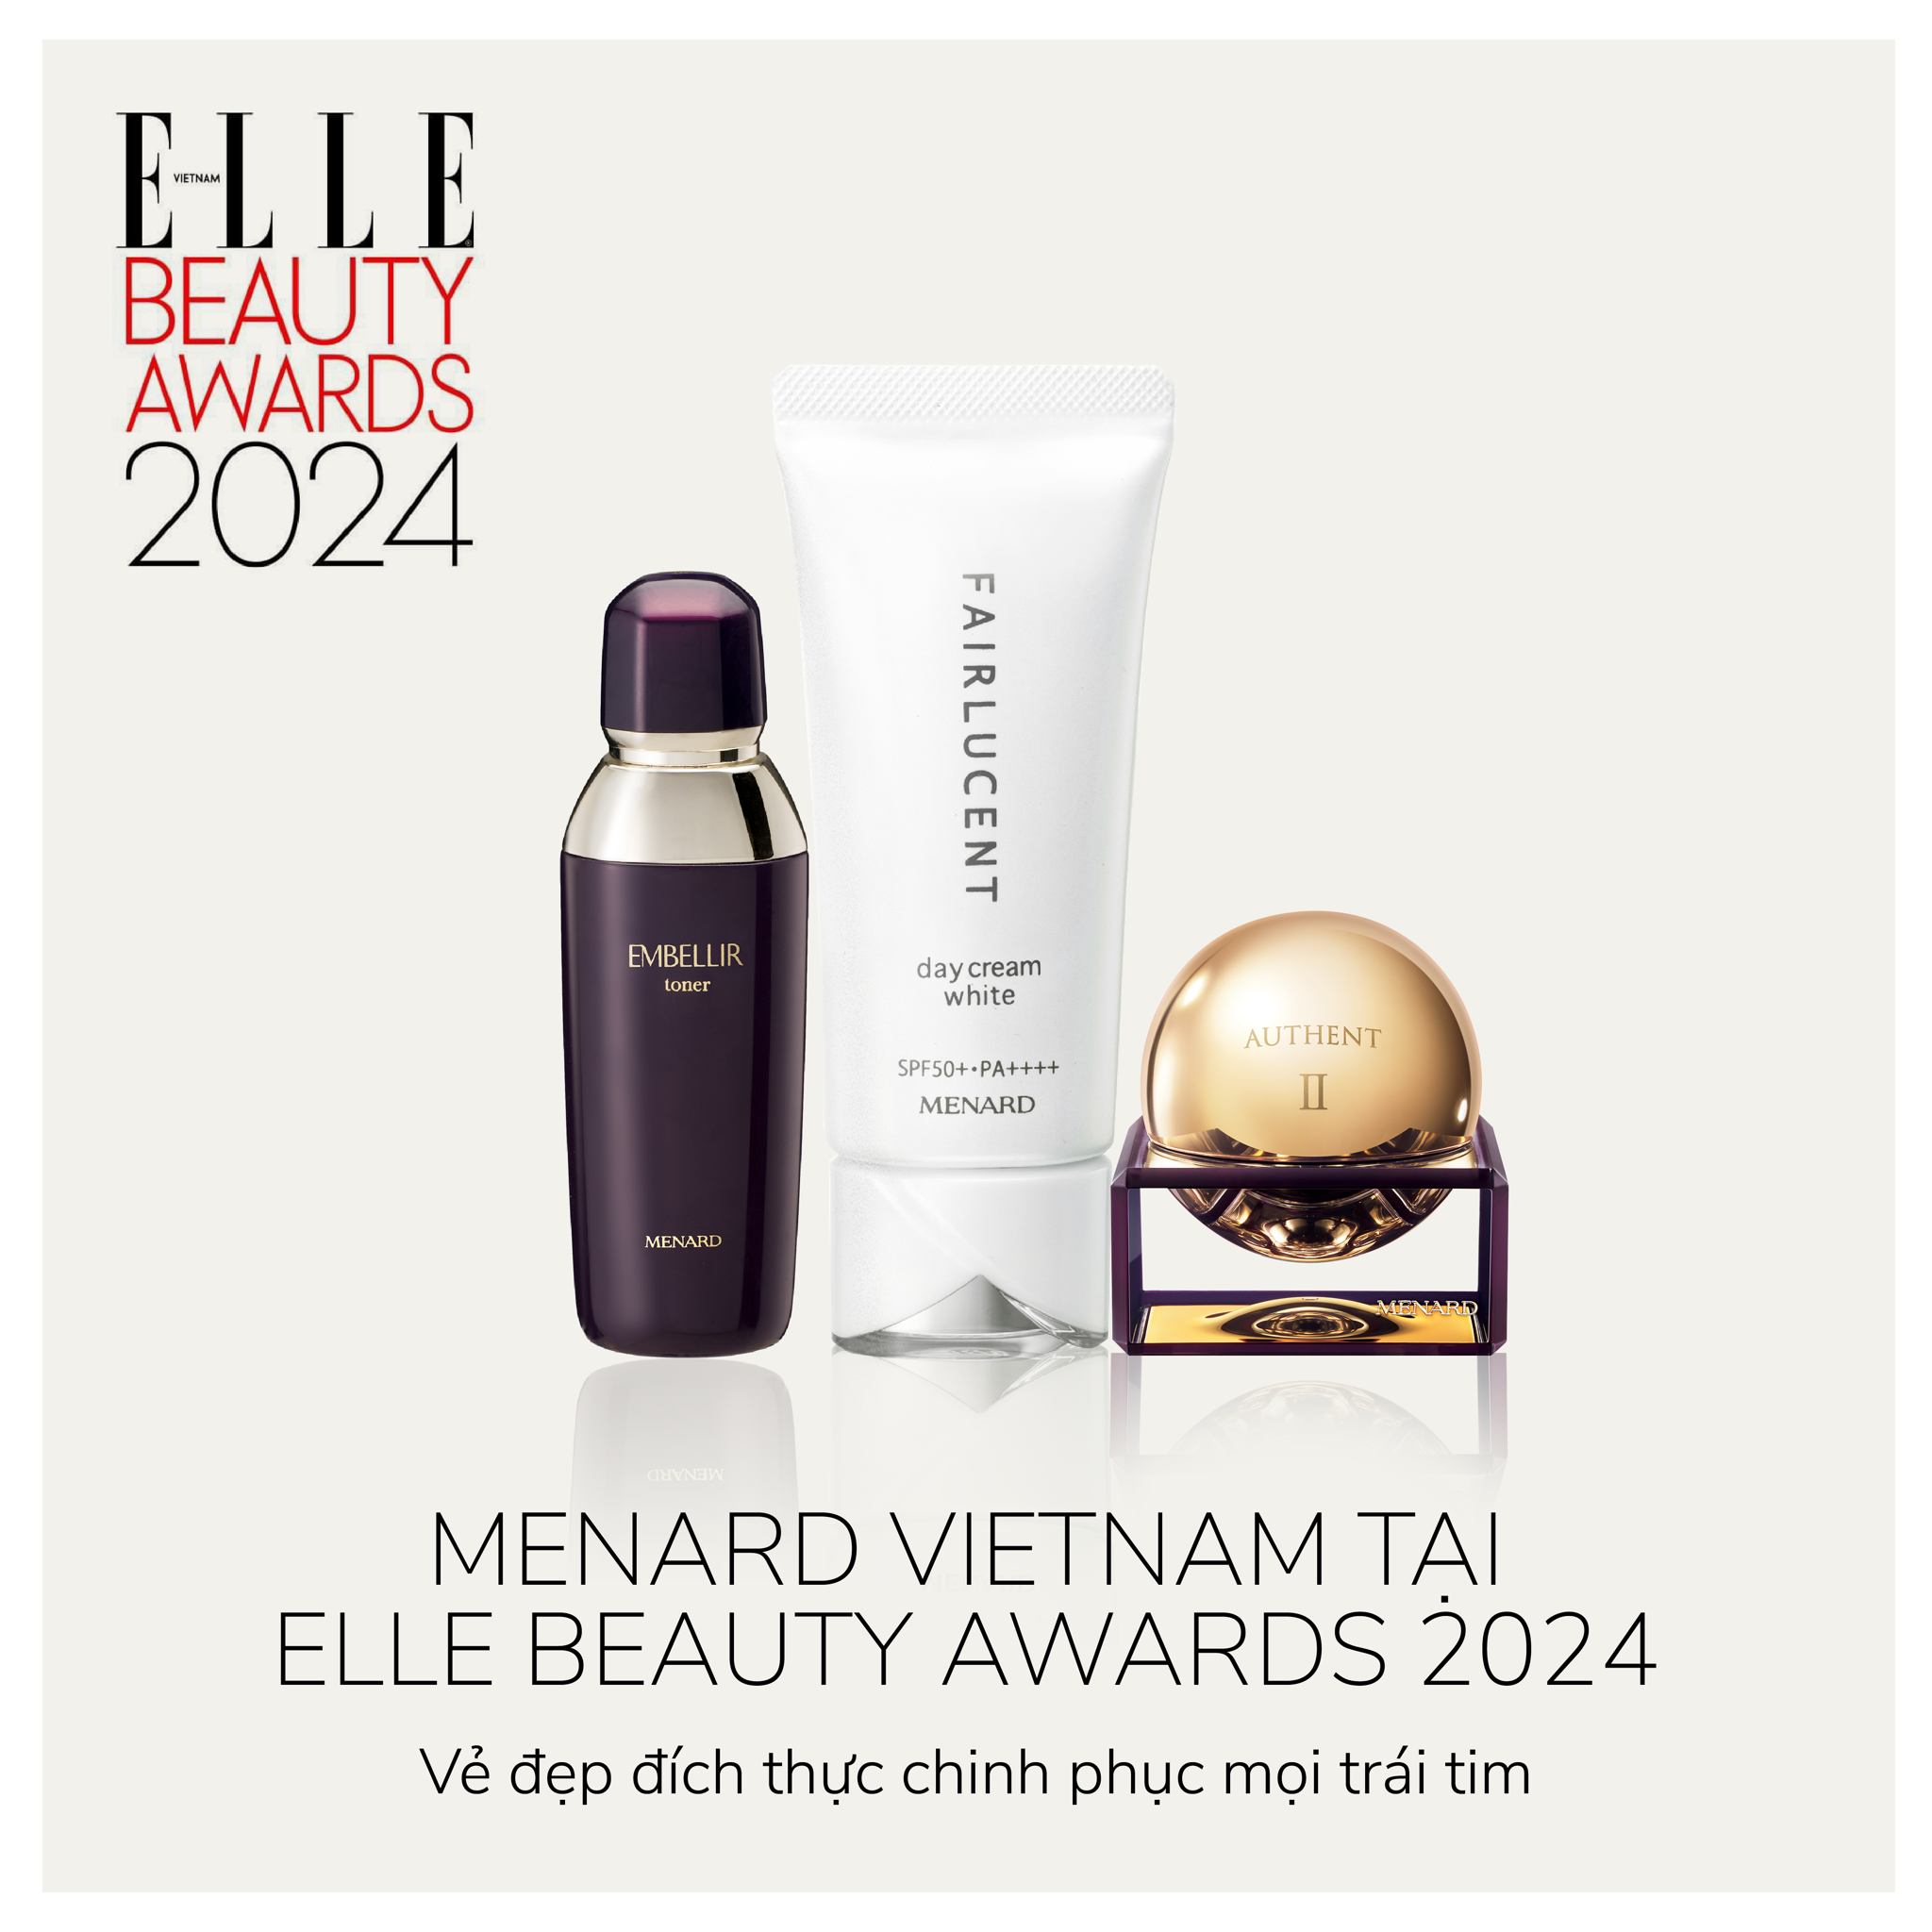 Menard Vietnam tại ELLE Beauty Awards 2024: Vẻ đẹp đích thực chinh phục mọi trái tim